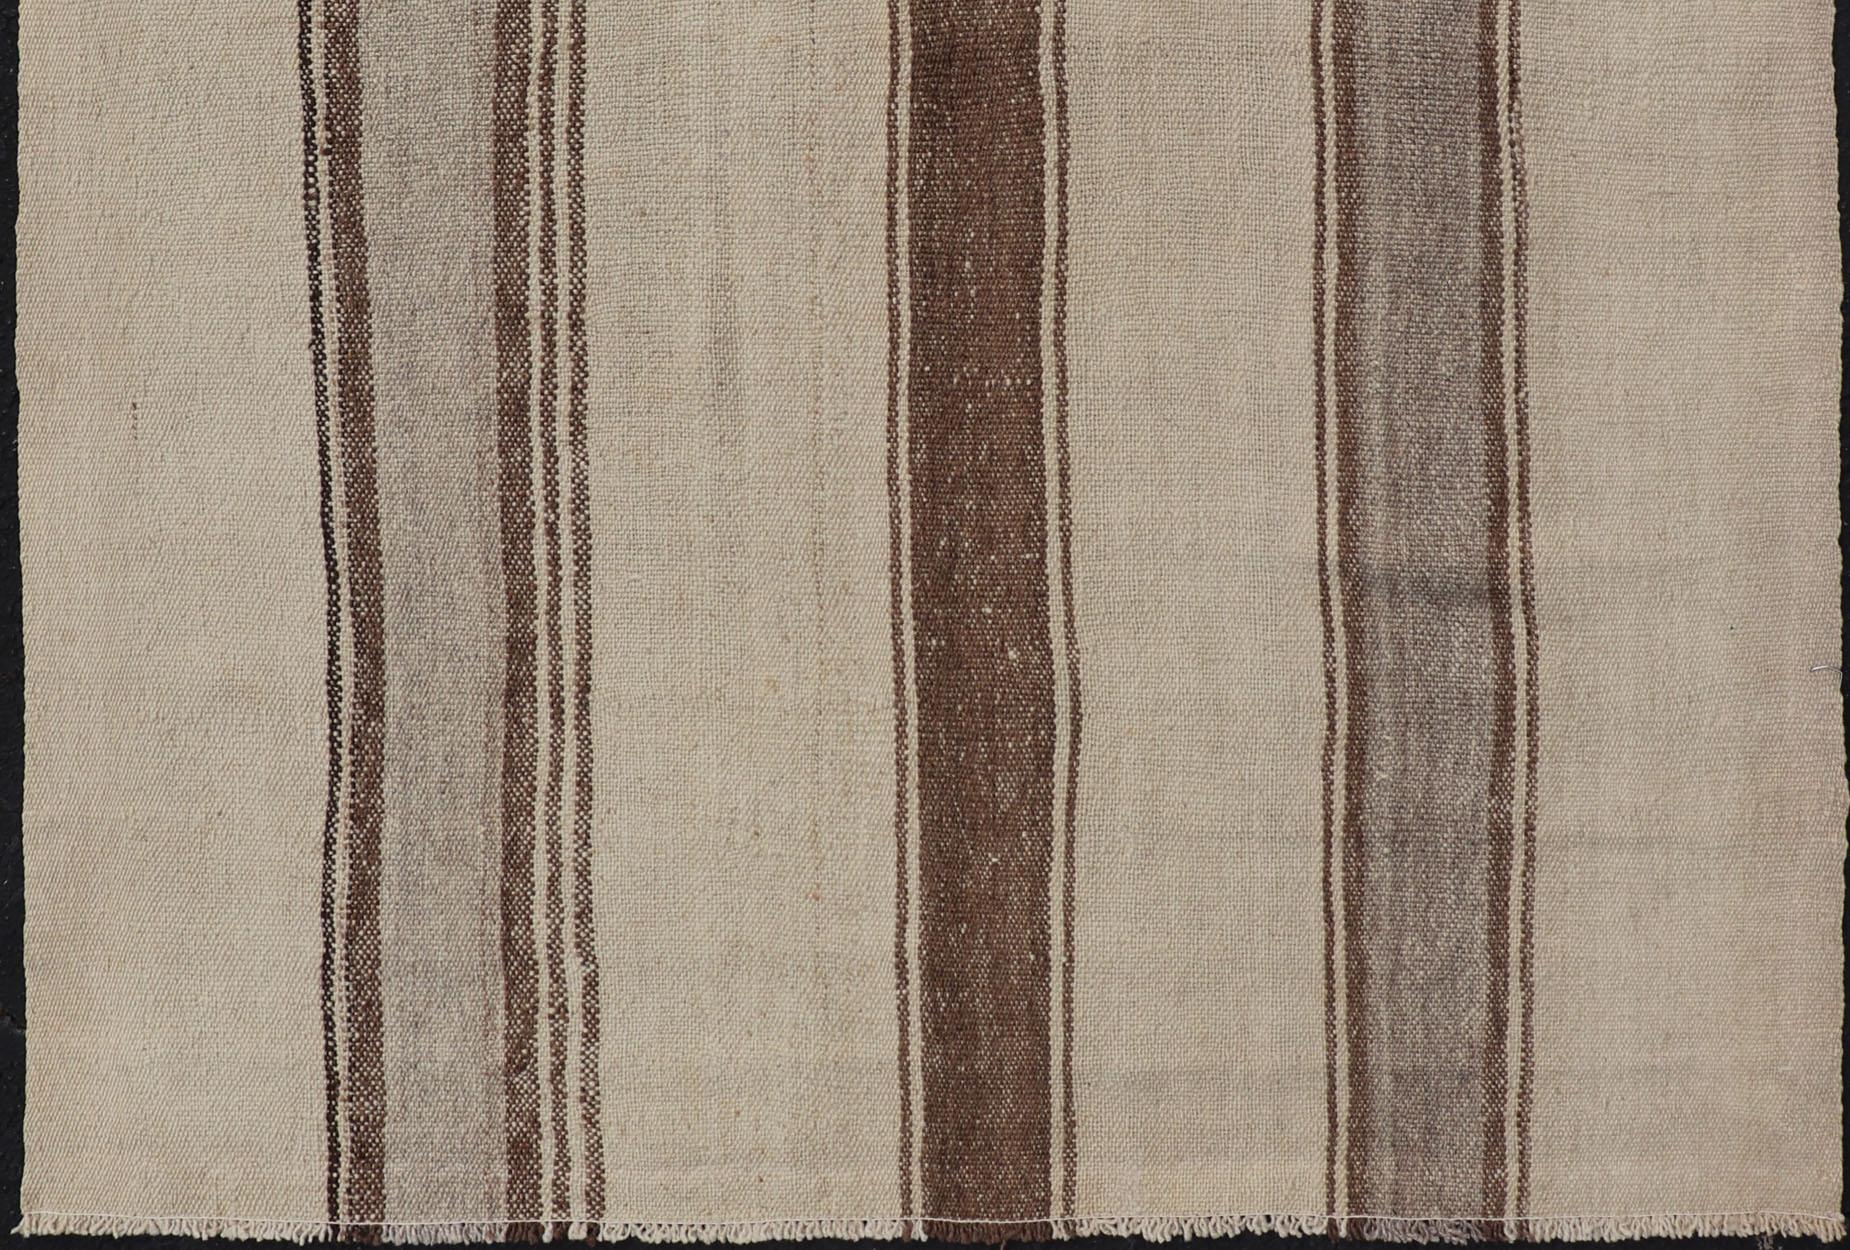 Vintage Kilim türkische Flachgewebe, Keivan Woven Arts Teppich EN-P13441 , Herkunftsland / Typ: Türkei / Kelim, etwa Mitte des 20. Jahrhunderts.

Maße: 4'3 x 5'10.